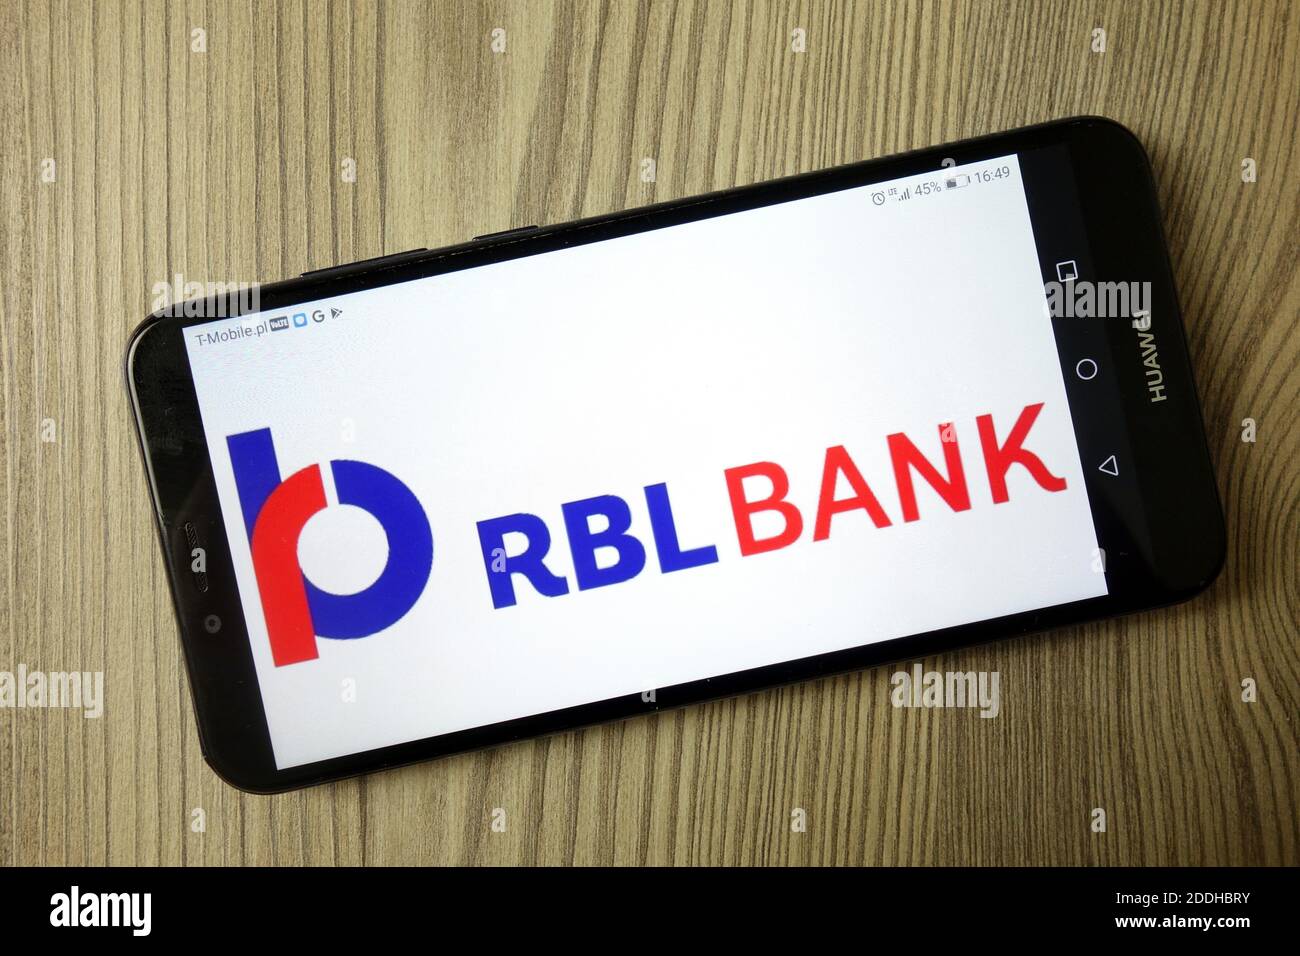 KONSKIE, POLEN - 21. Dezember 2019: Logo der RBL Bank auf dem Mobiltelefon Stockfoto